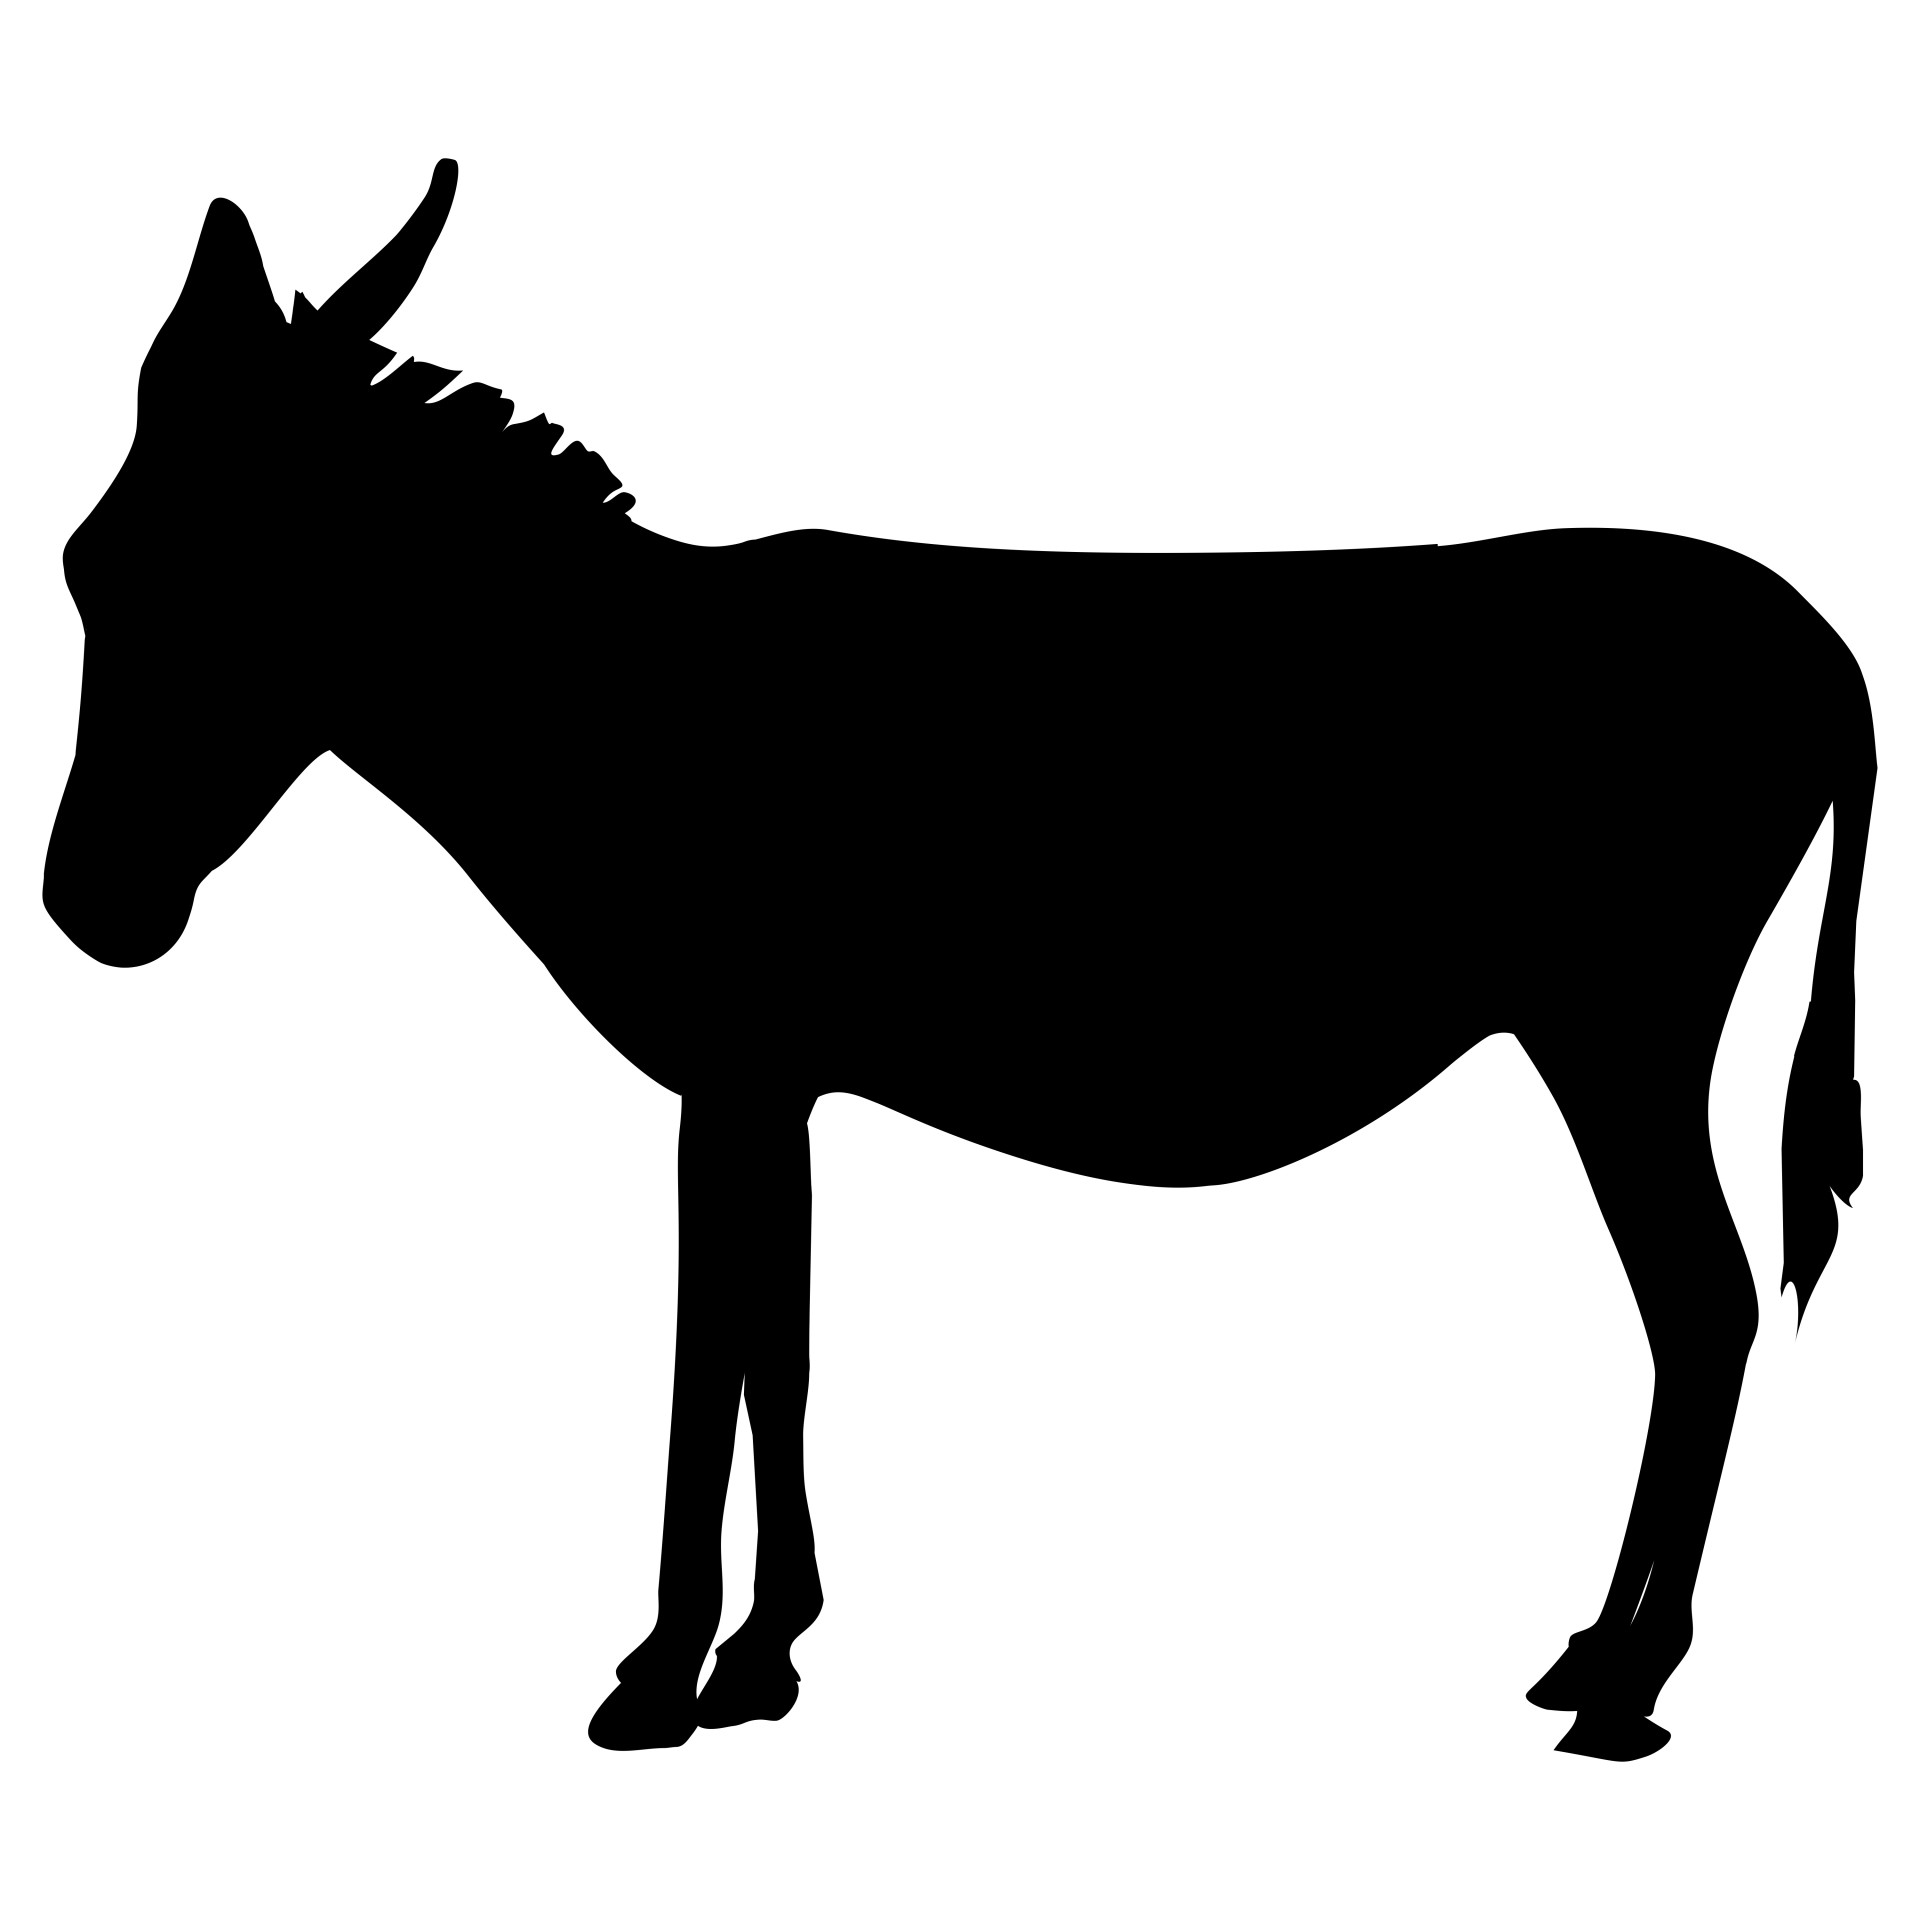 Donkey Free Stock Photo